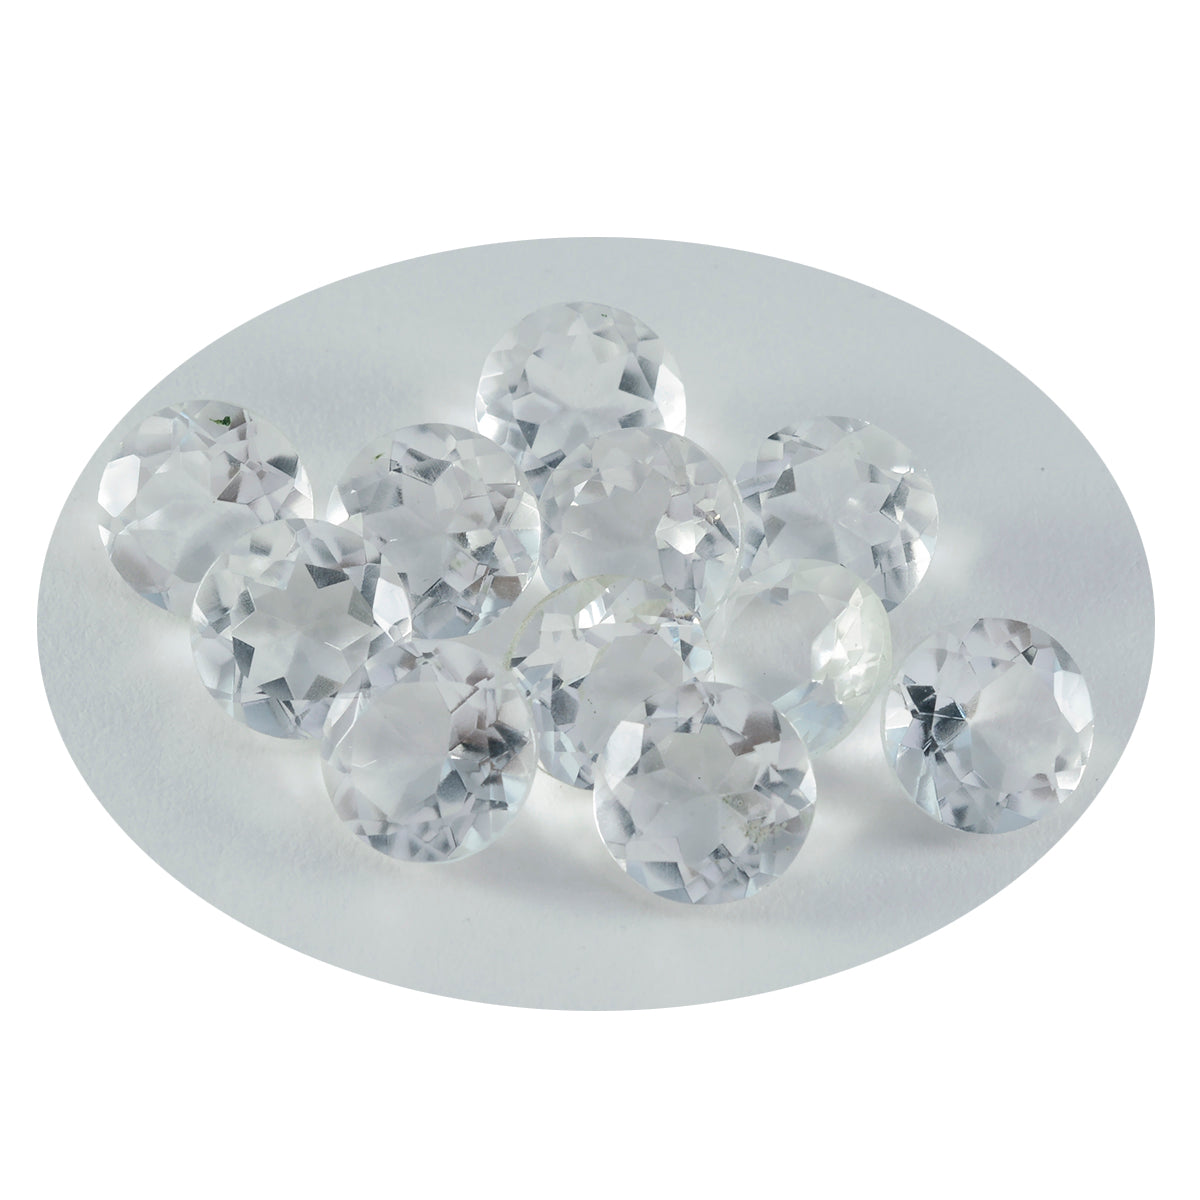 Riyogems 1 pièce de quartz cristal blanc à facettes 9x9mm forme ronde qualité aaa pierres précieuses en vrac